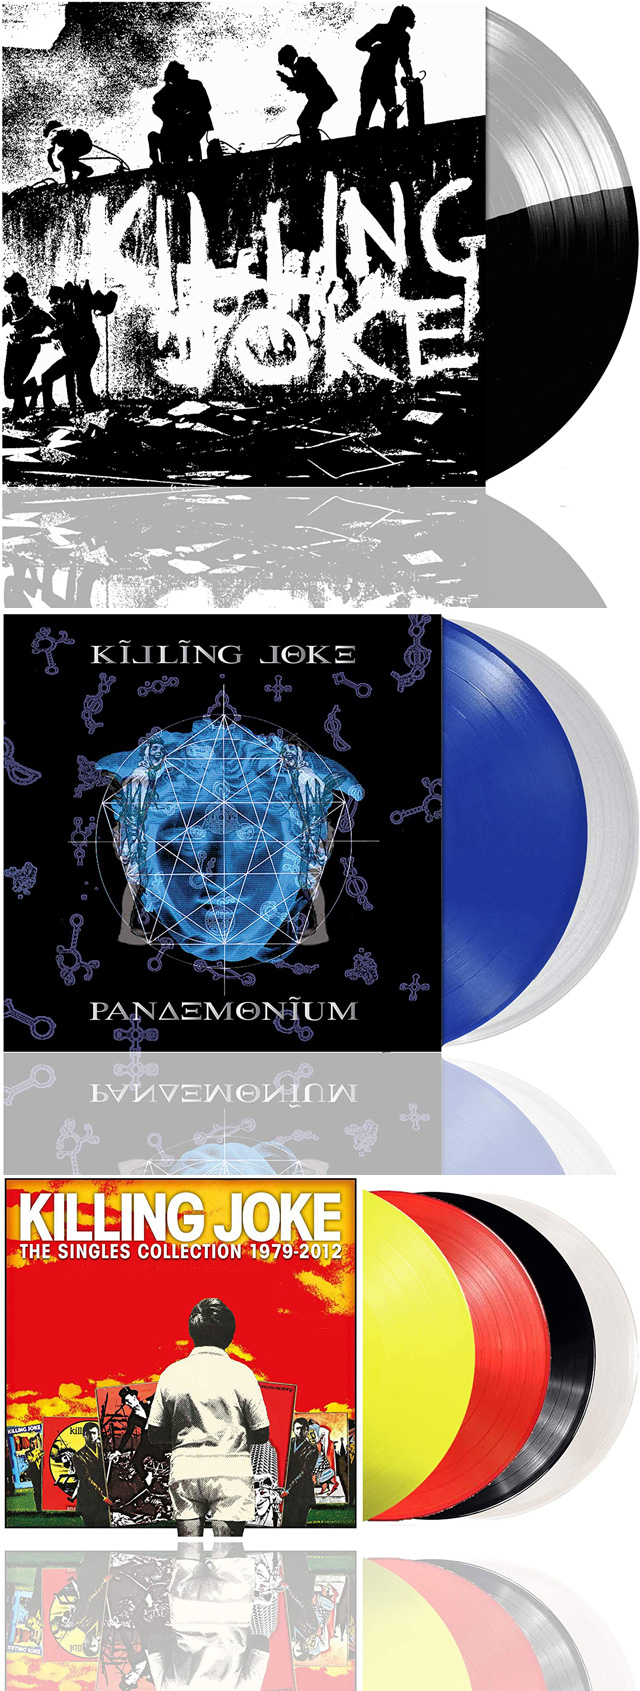 Killing Joke / Killing Joke [coloured vinyl]、Pandemonium [coloured vinyl] 、Singles Collection 1979 - 2012 [coloured vinyl]